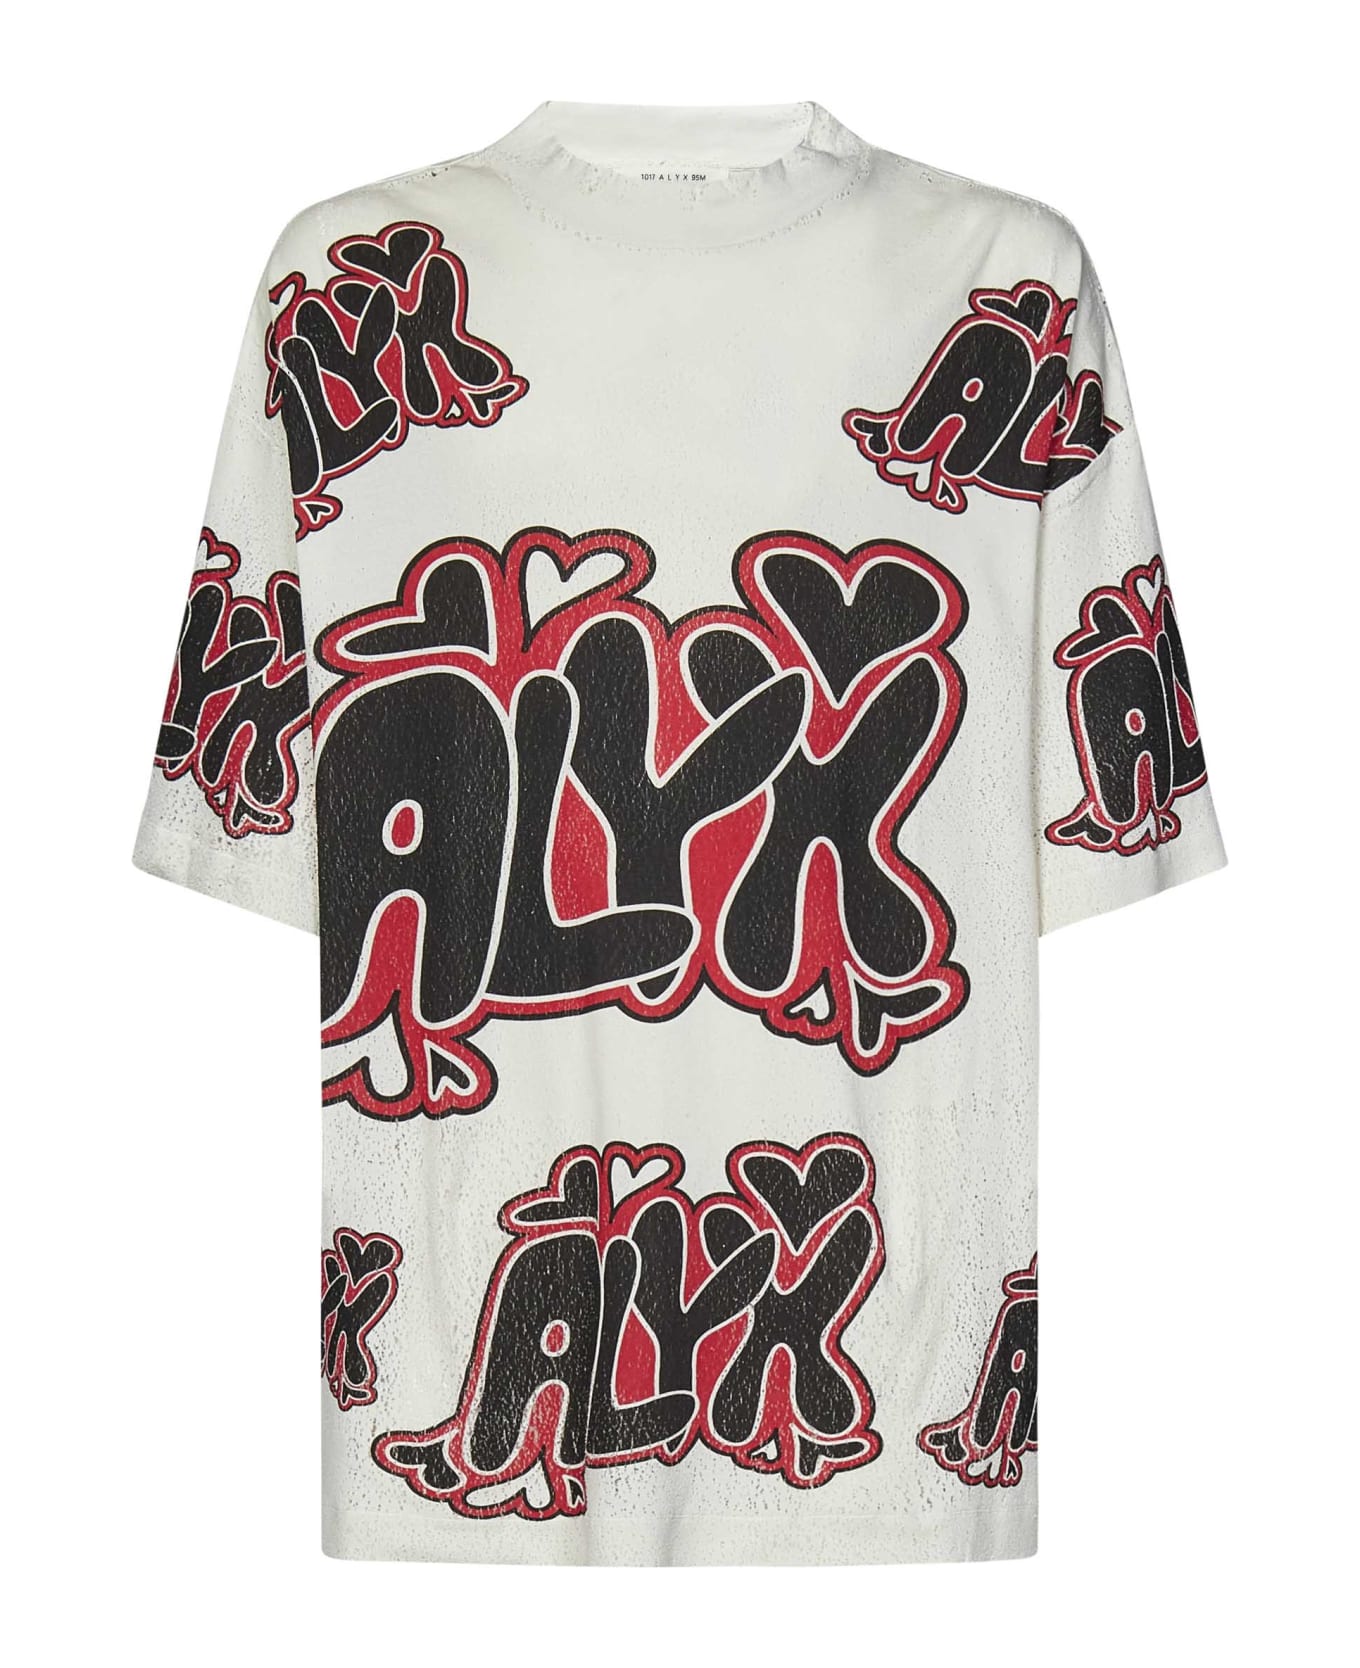 1017 ALYX 9SM Alyx T-shirt - White